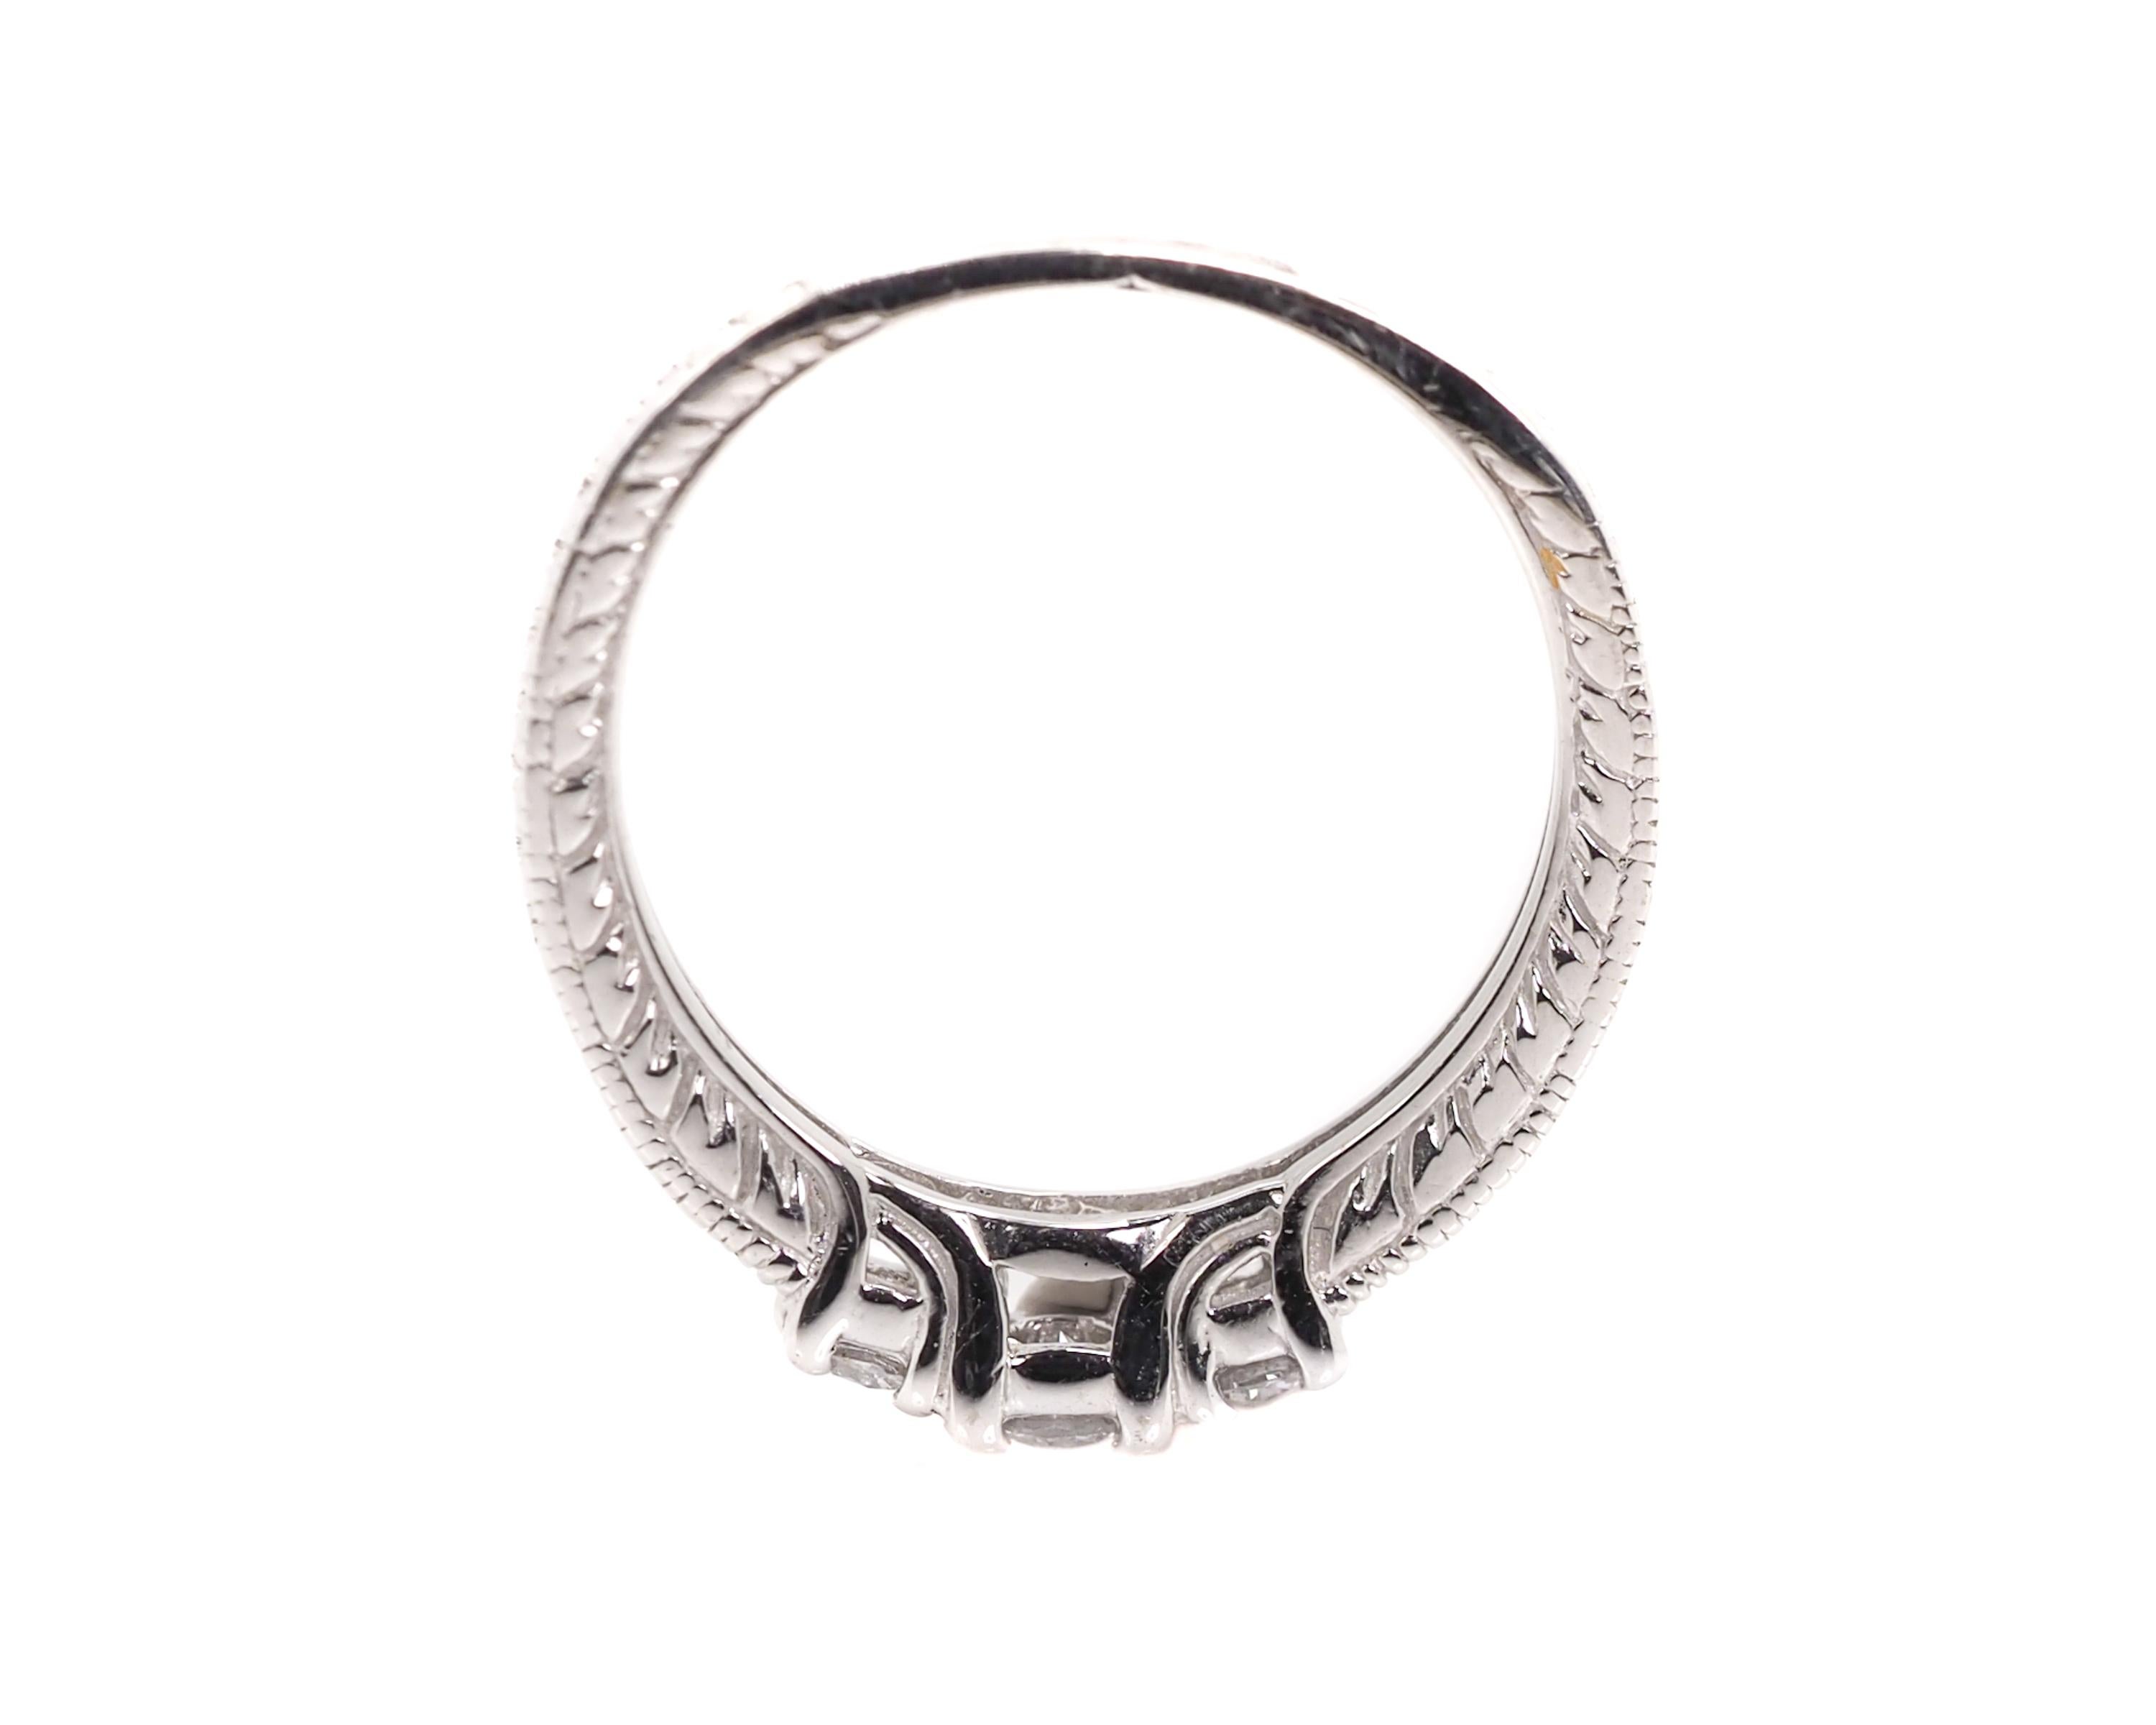 Round Cut 0.25 Carat Diamond and 14 Karat White Gold Vintage Inspired Engagement Ring